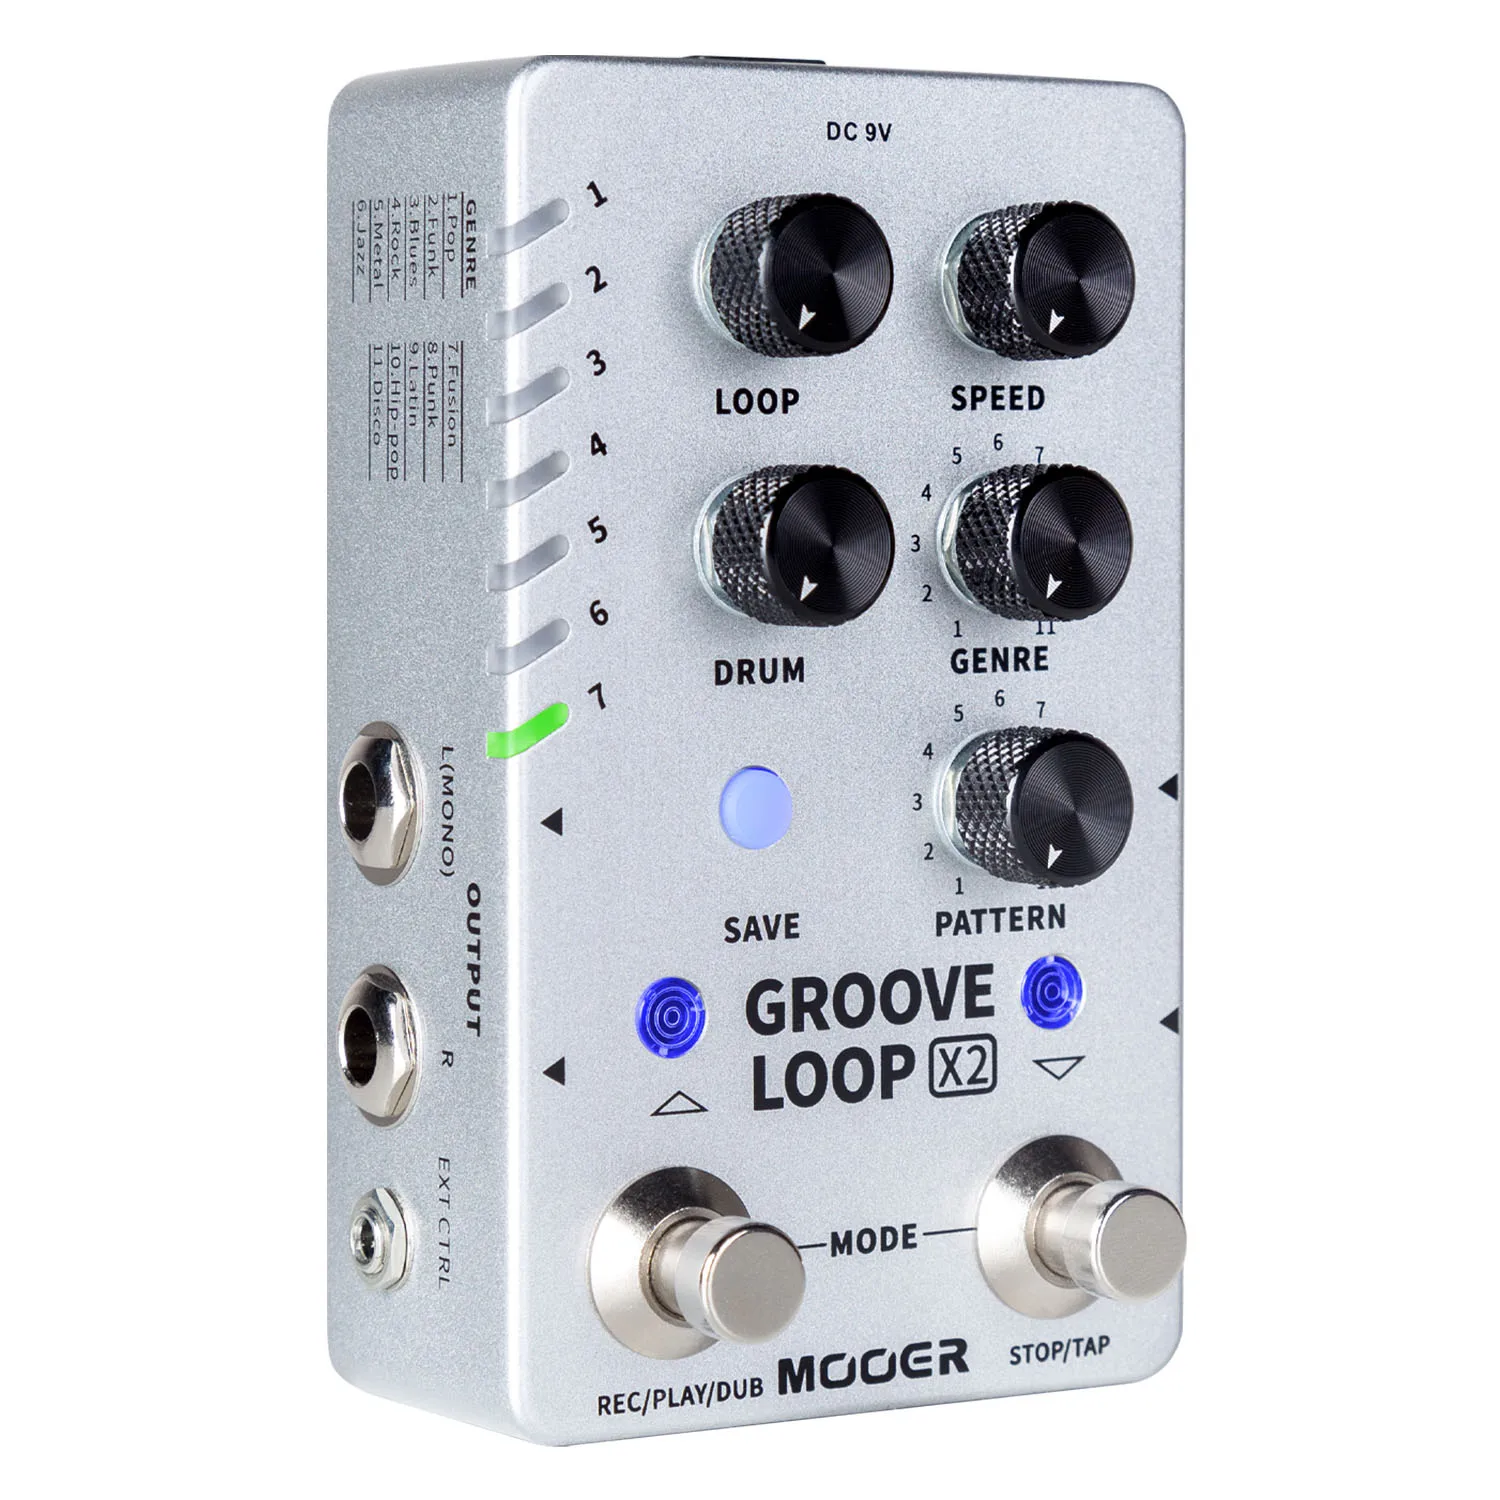 Mooer Groove Pedal Looper Guitarra Pedalboard Guitar Parts and Accessories Groove Loop X2 Looper 140 Minutes Loops 121 Drum